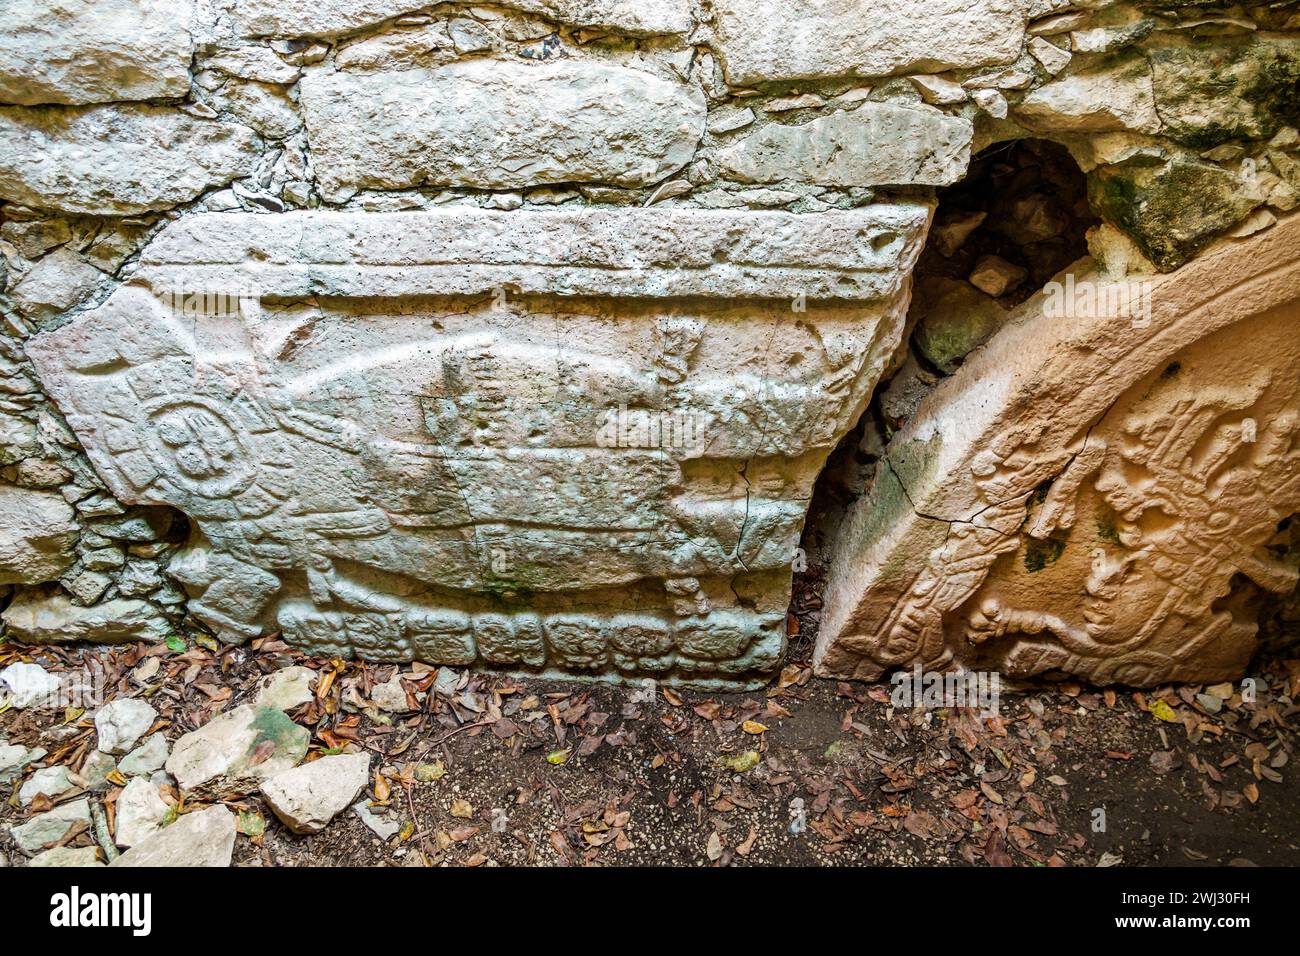 Merida Messico, sito archeologico di Dzibilchaltun Parco Nazionale, rovine della città della civiltà Maya, zona Arqueologica de Dzibilchaltun, struttura 36 roccia Foto Stock